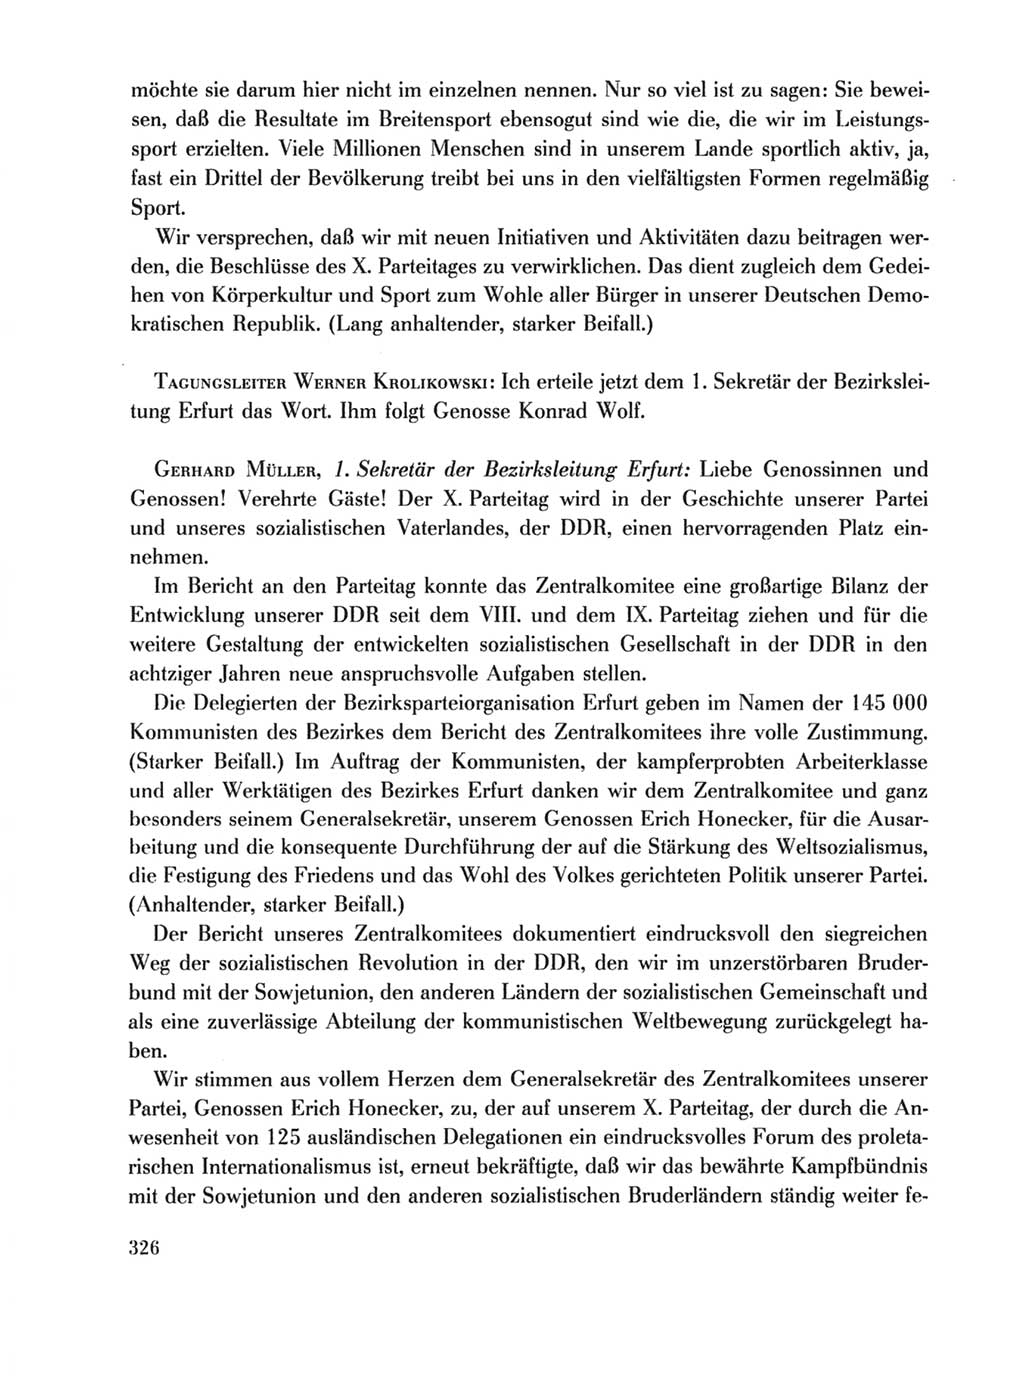 Protokoll der Verhandlungen des Ⅹ. Parteitages der Sozialistischen Einheitspartei Deutschlands (SED) [Deutsche Demokratische Republik (DDR)] 1981, Band 1, Seite 326 (Prot. Verh. Ⅹ. PT SED DDR 1981, Bd. 1, S. 326)